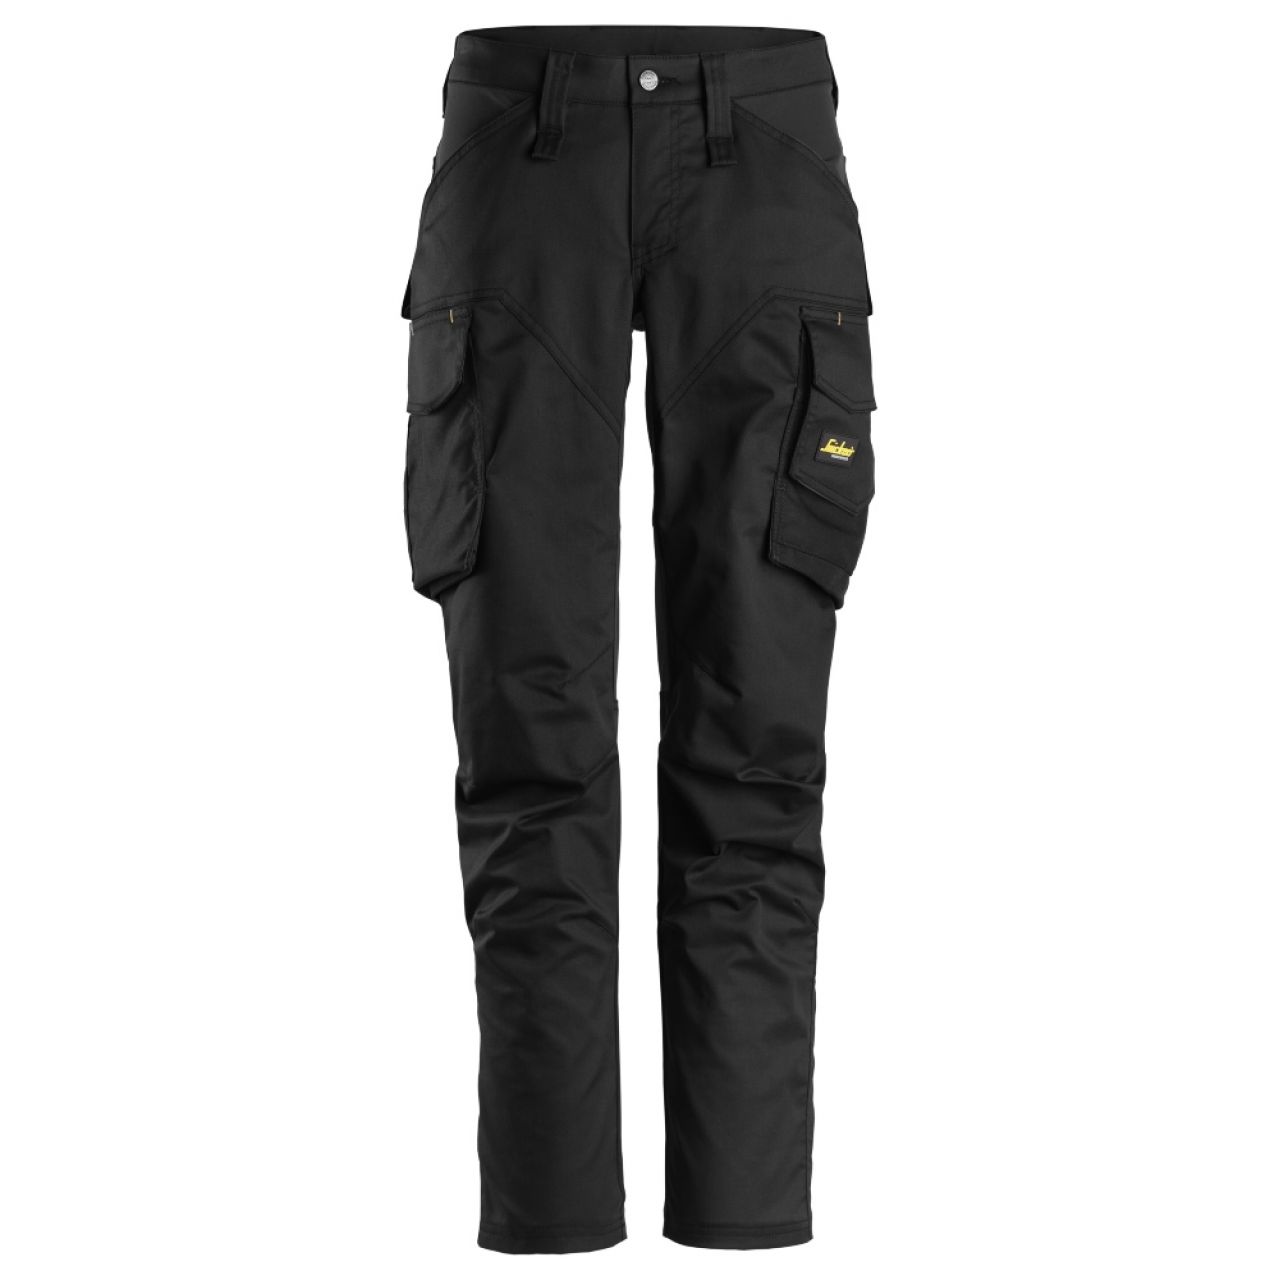 6703 Pantalones largos de trabajo elásticos para mujer con bolsillos para rodilleras AllroundWork negro talla 52